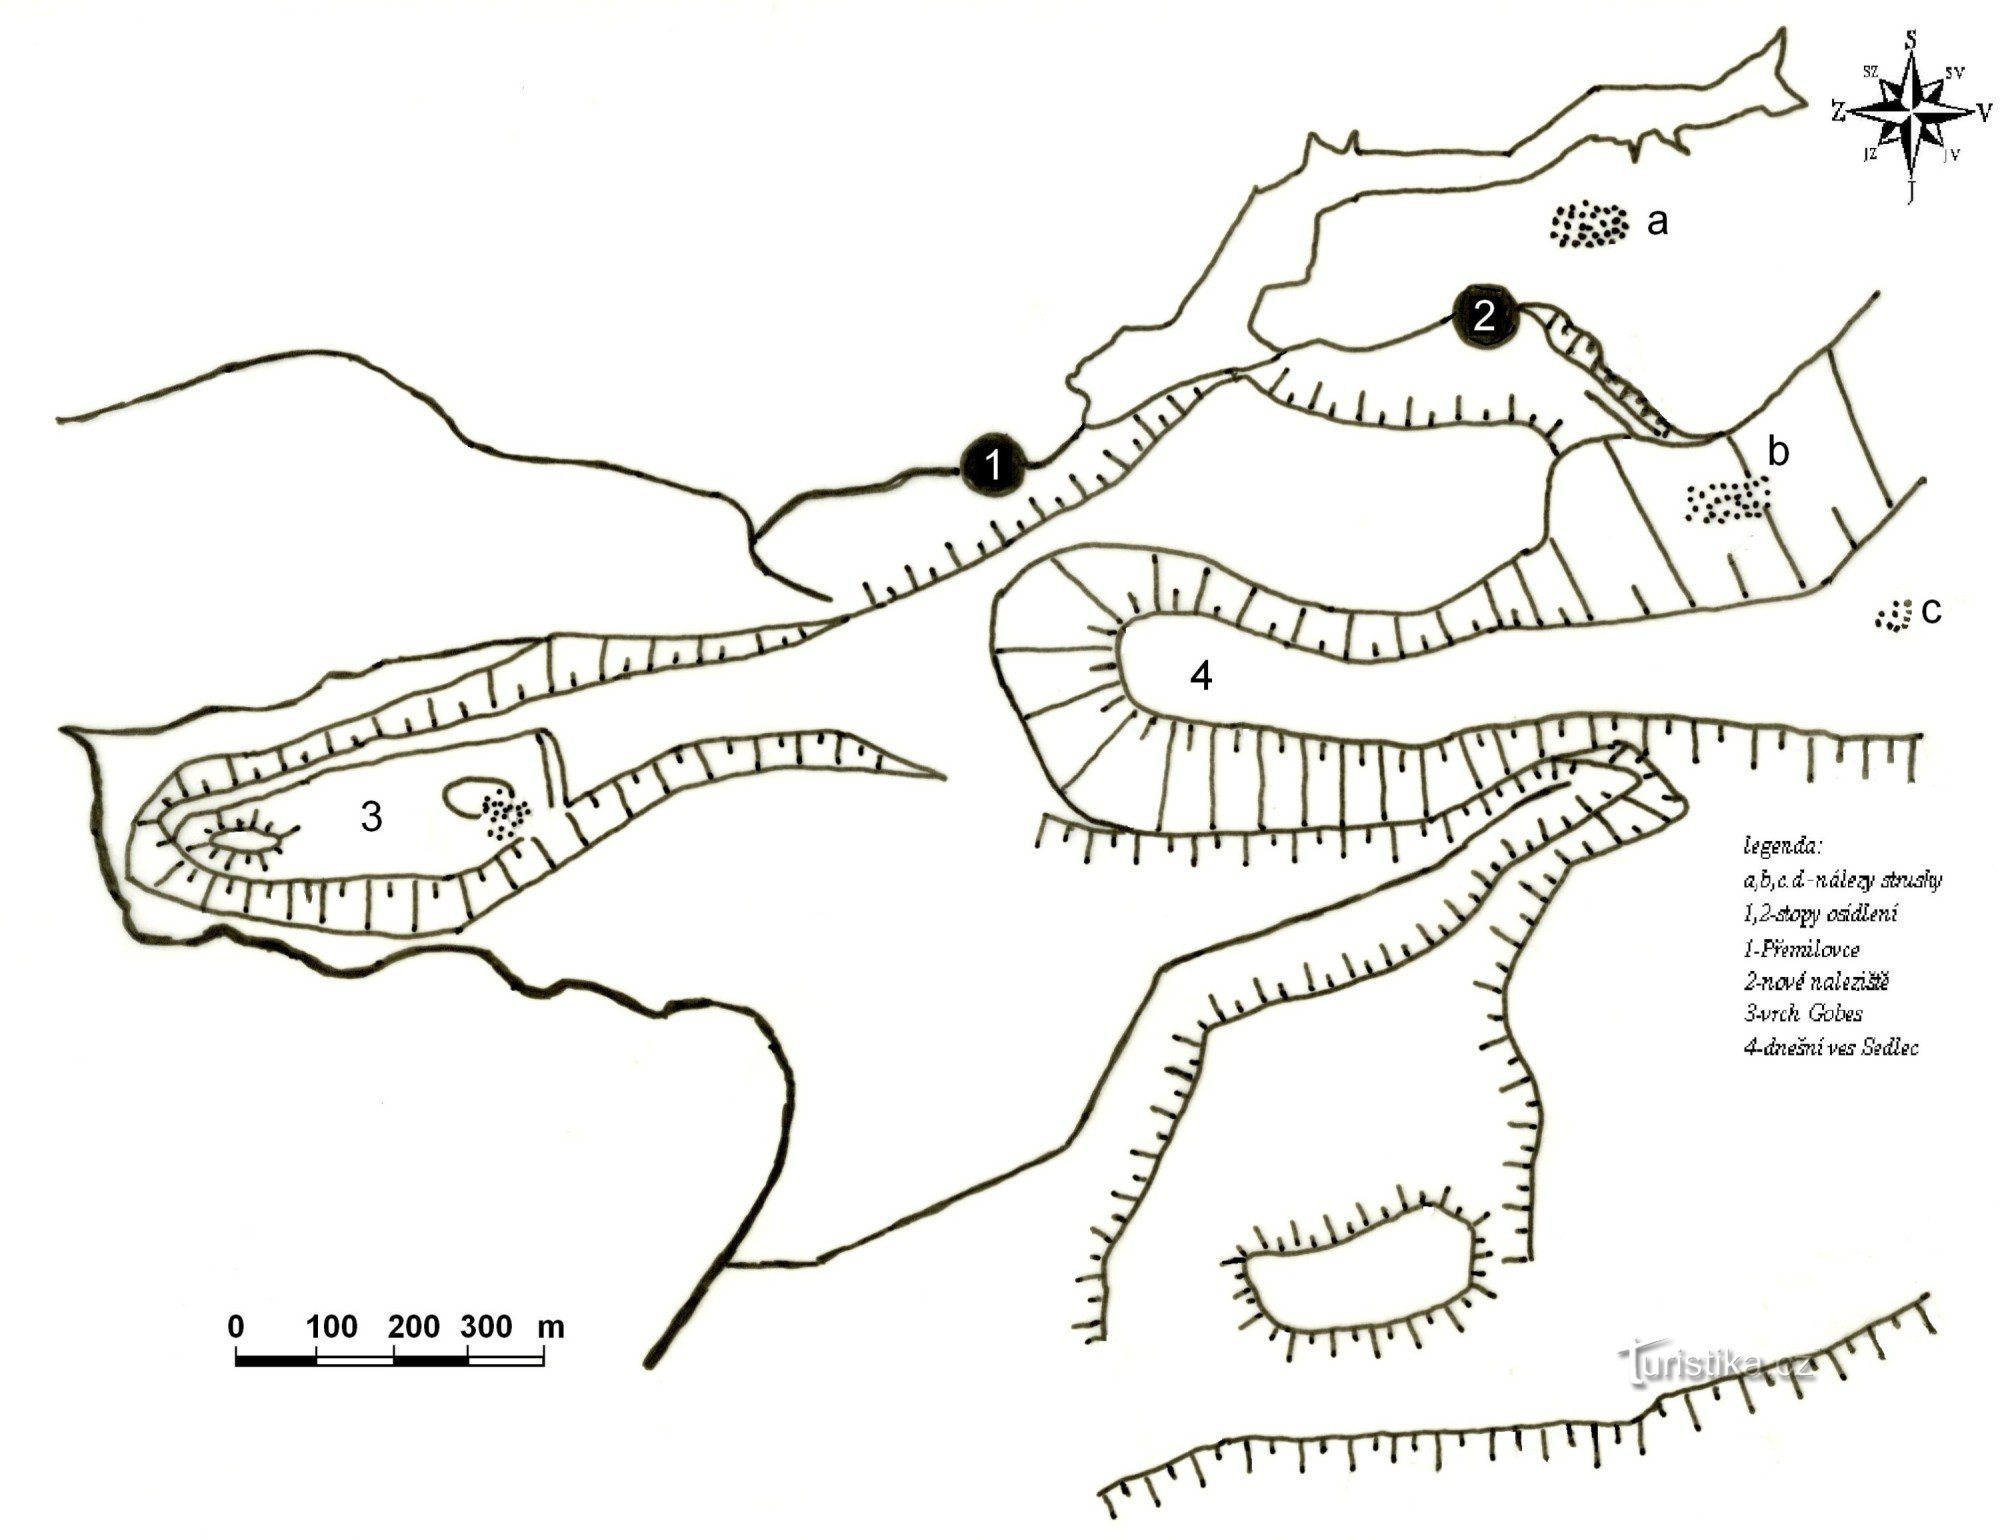 lewe wzgórze Gobes, punkt 1 - Přemilovice, punkt 2 - stanowisko z wczesnośredniowiecznym